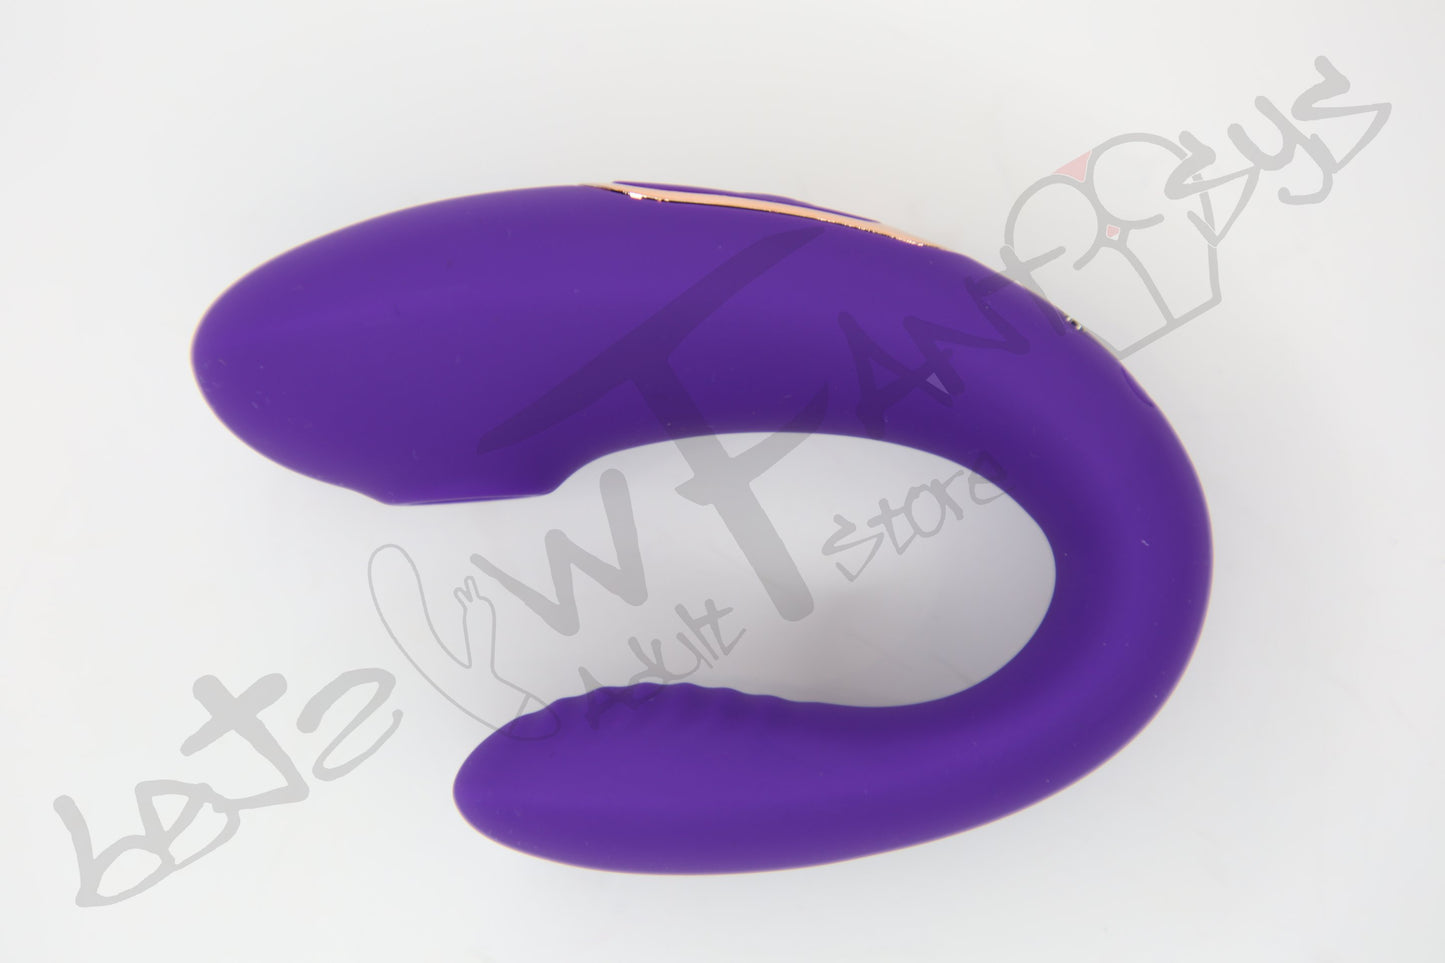 Swan 2 clitoris sucker with internal massager